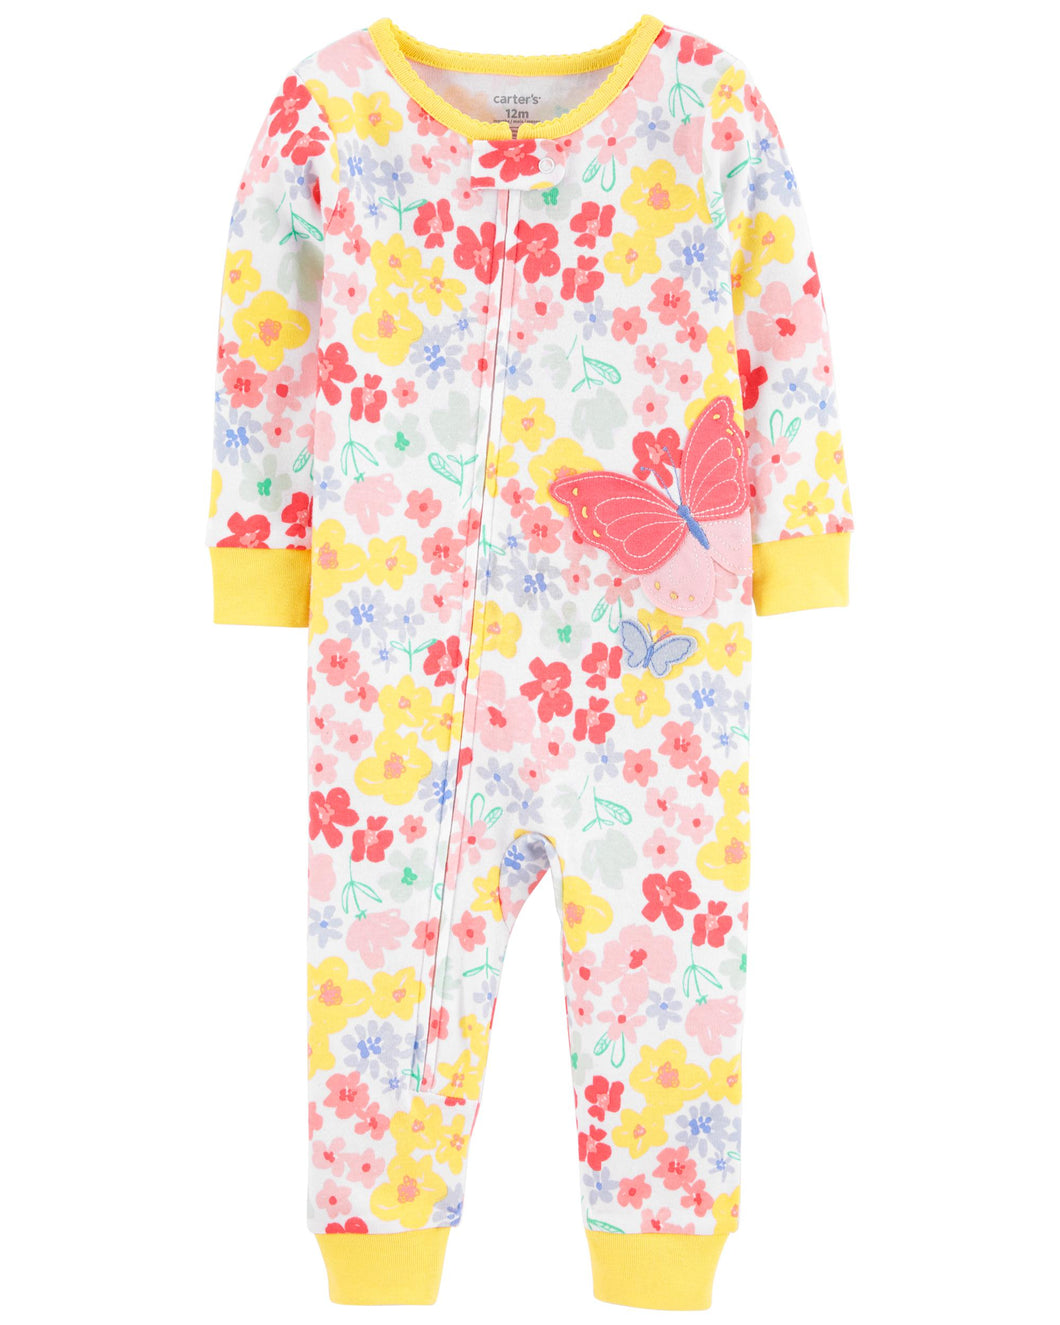 Pijama Mariposas y Flores Carter´s Niña 100% Algodón